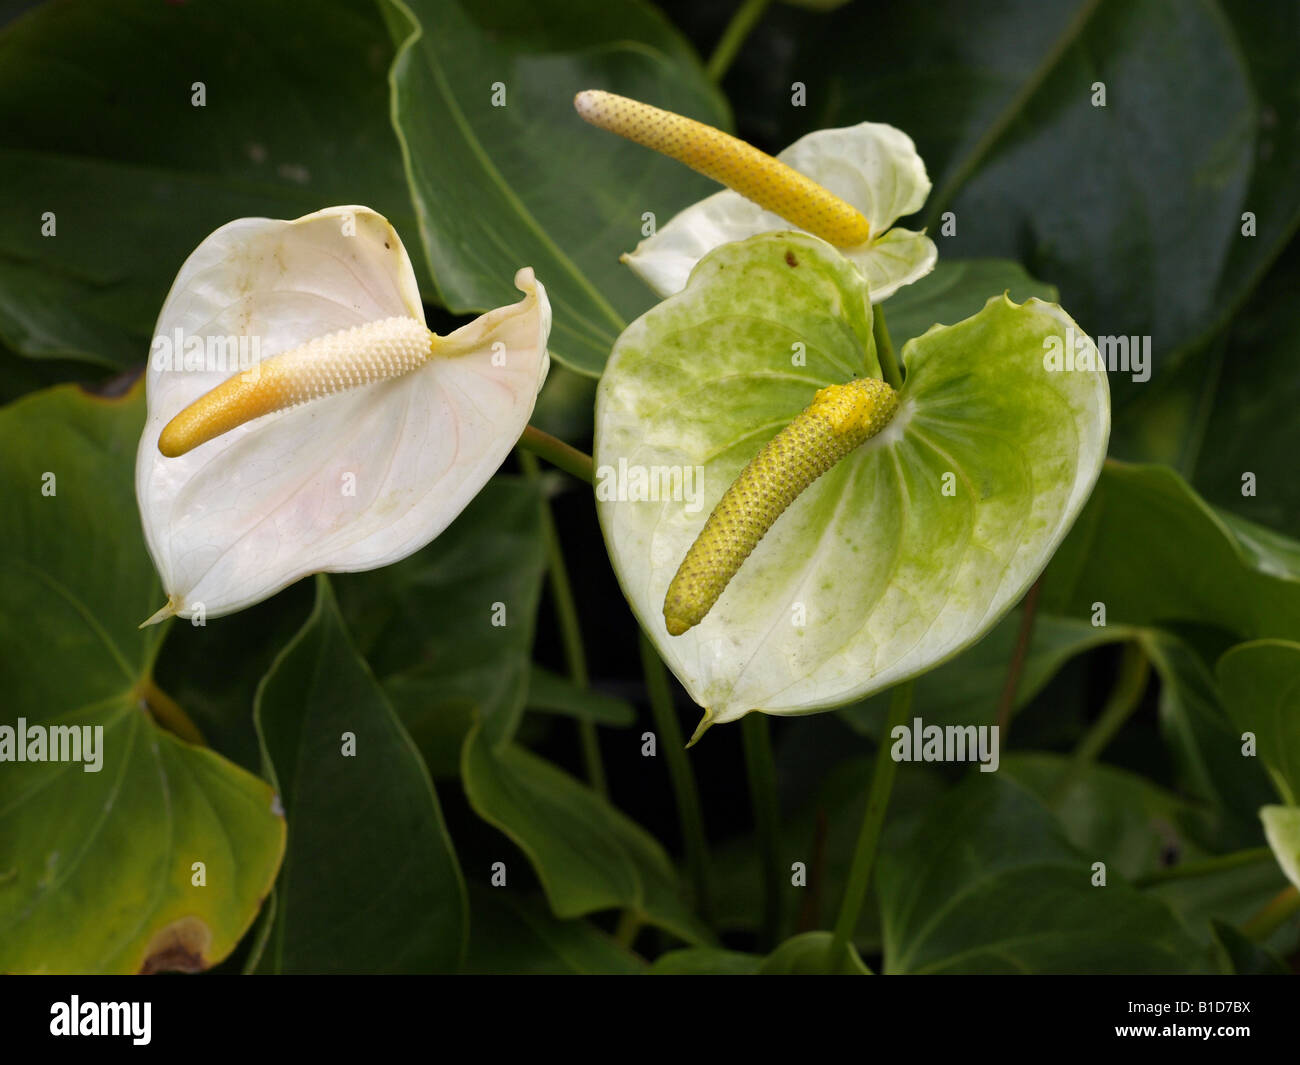 TÌNH YÊU CÂY CỎ ĐV.3 - Page 45 White-and-green-anthurium-spathiphyllum-B1D7BX